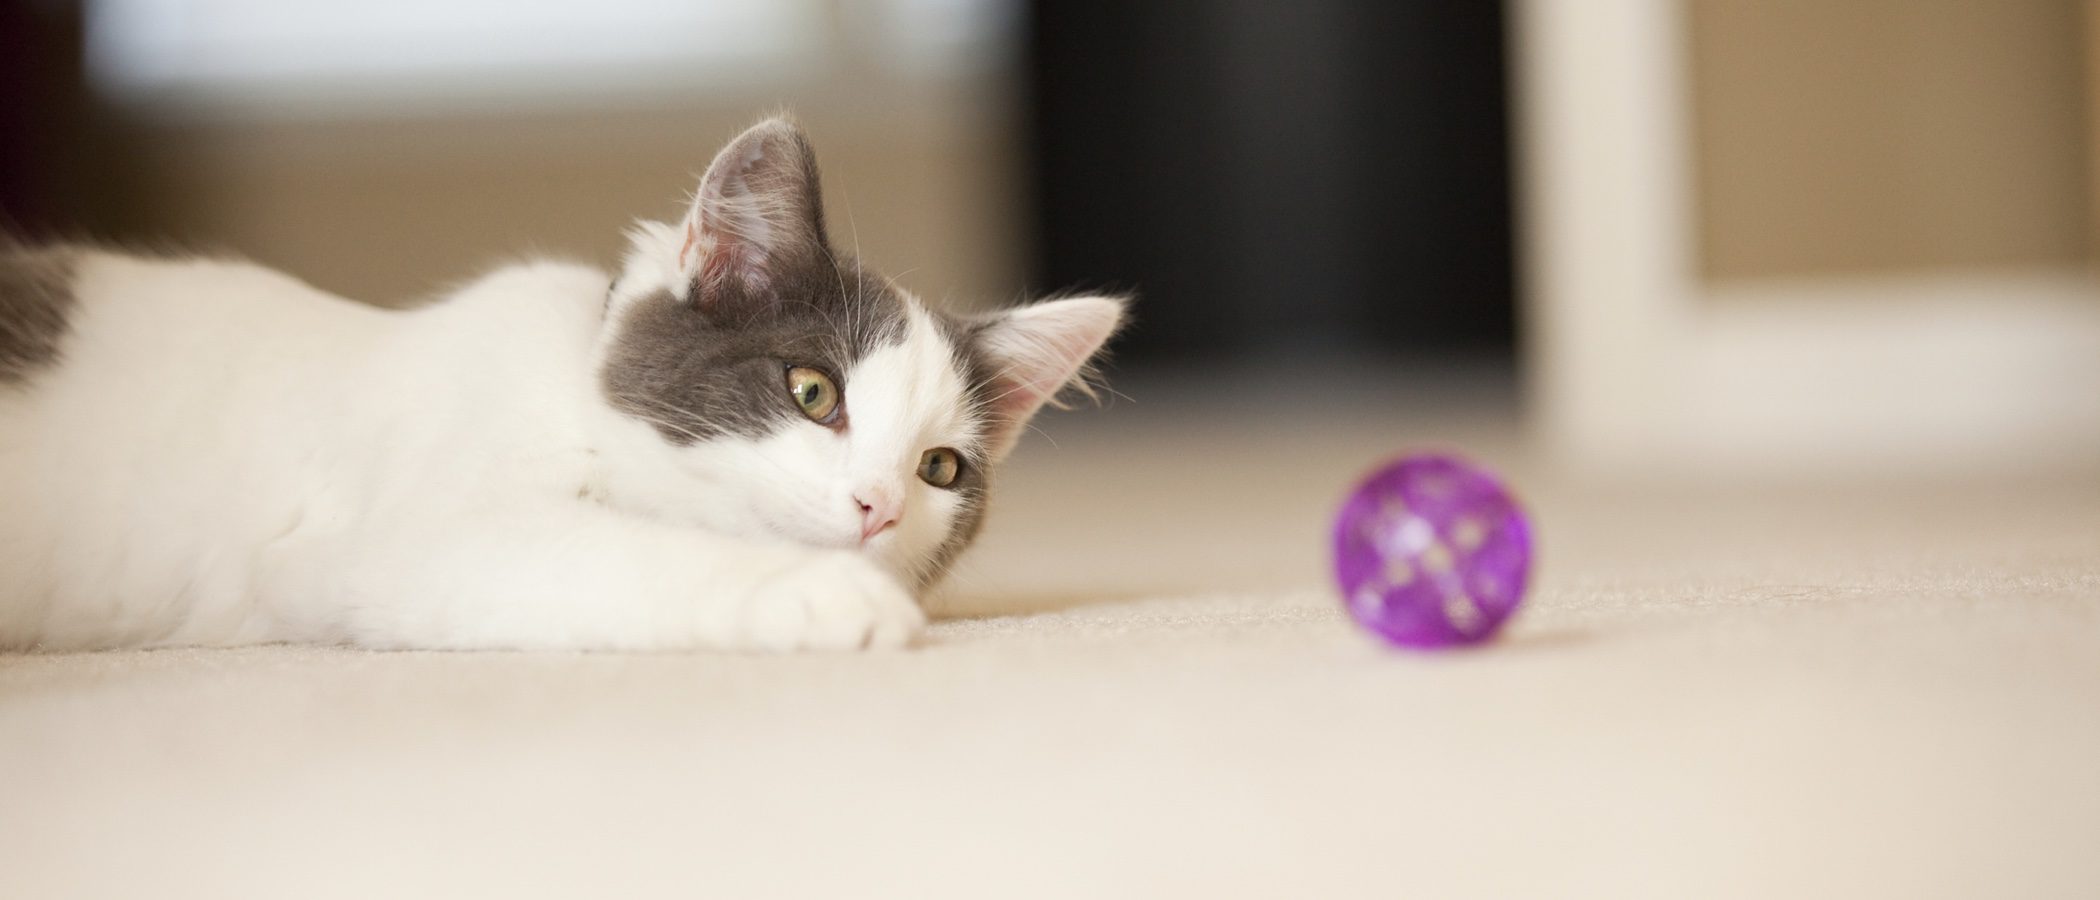 Tipos de juguetes para gatos: ¿Cuáles son los más adecuados?